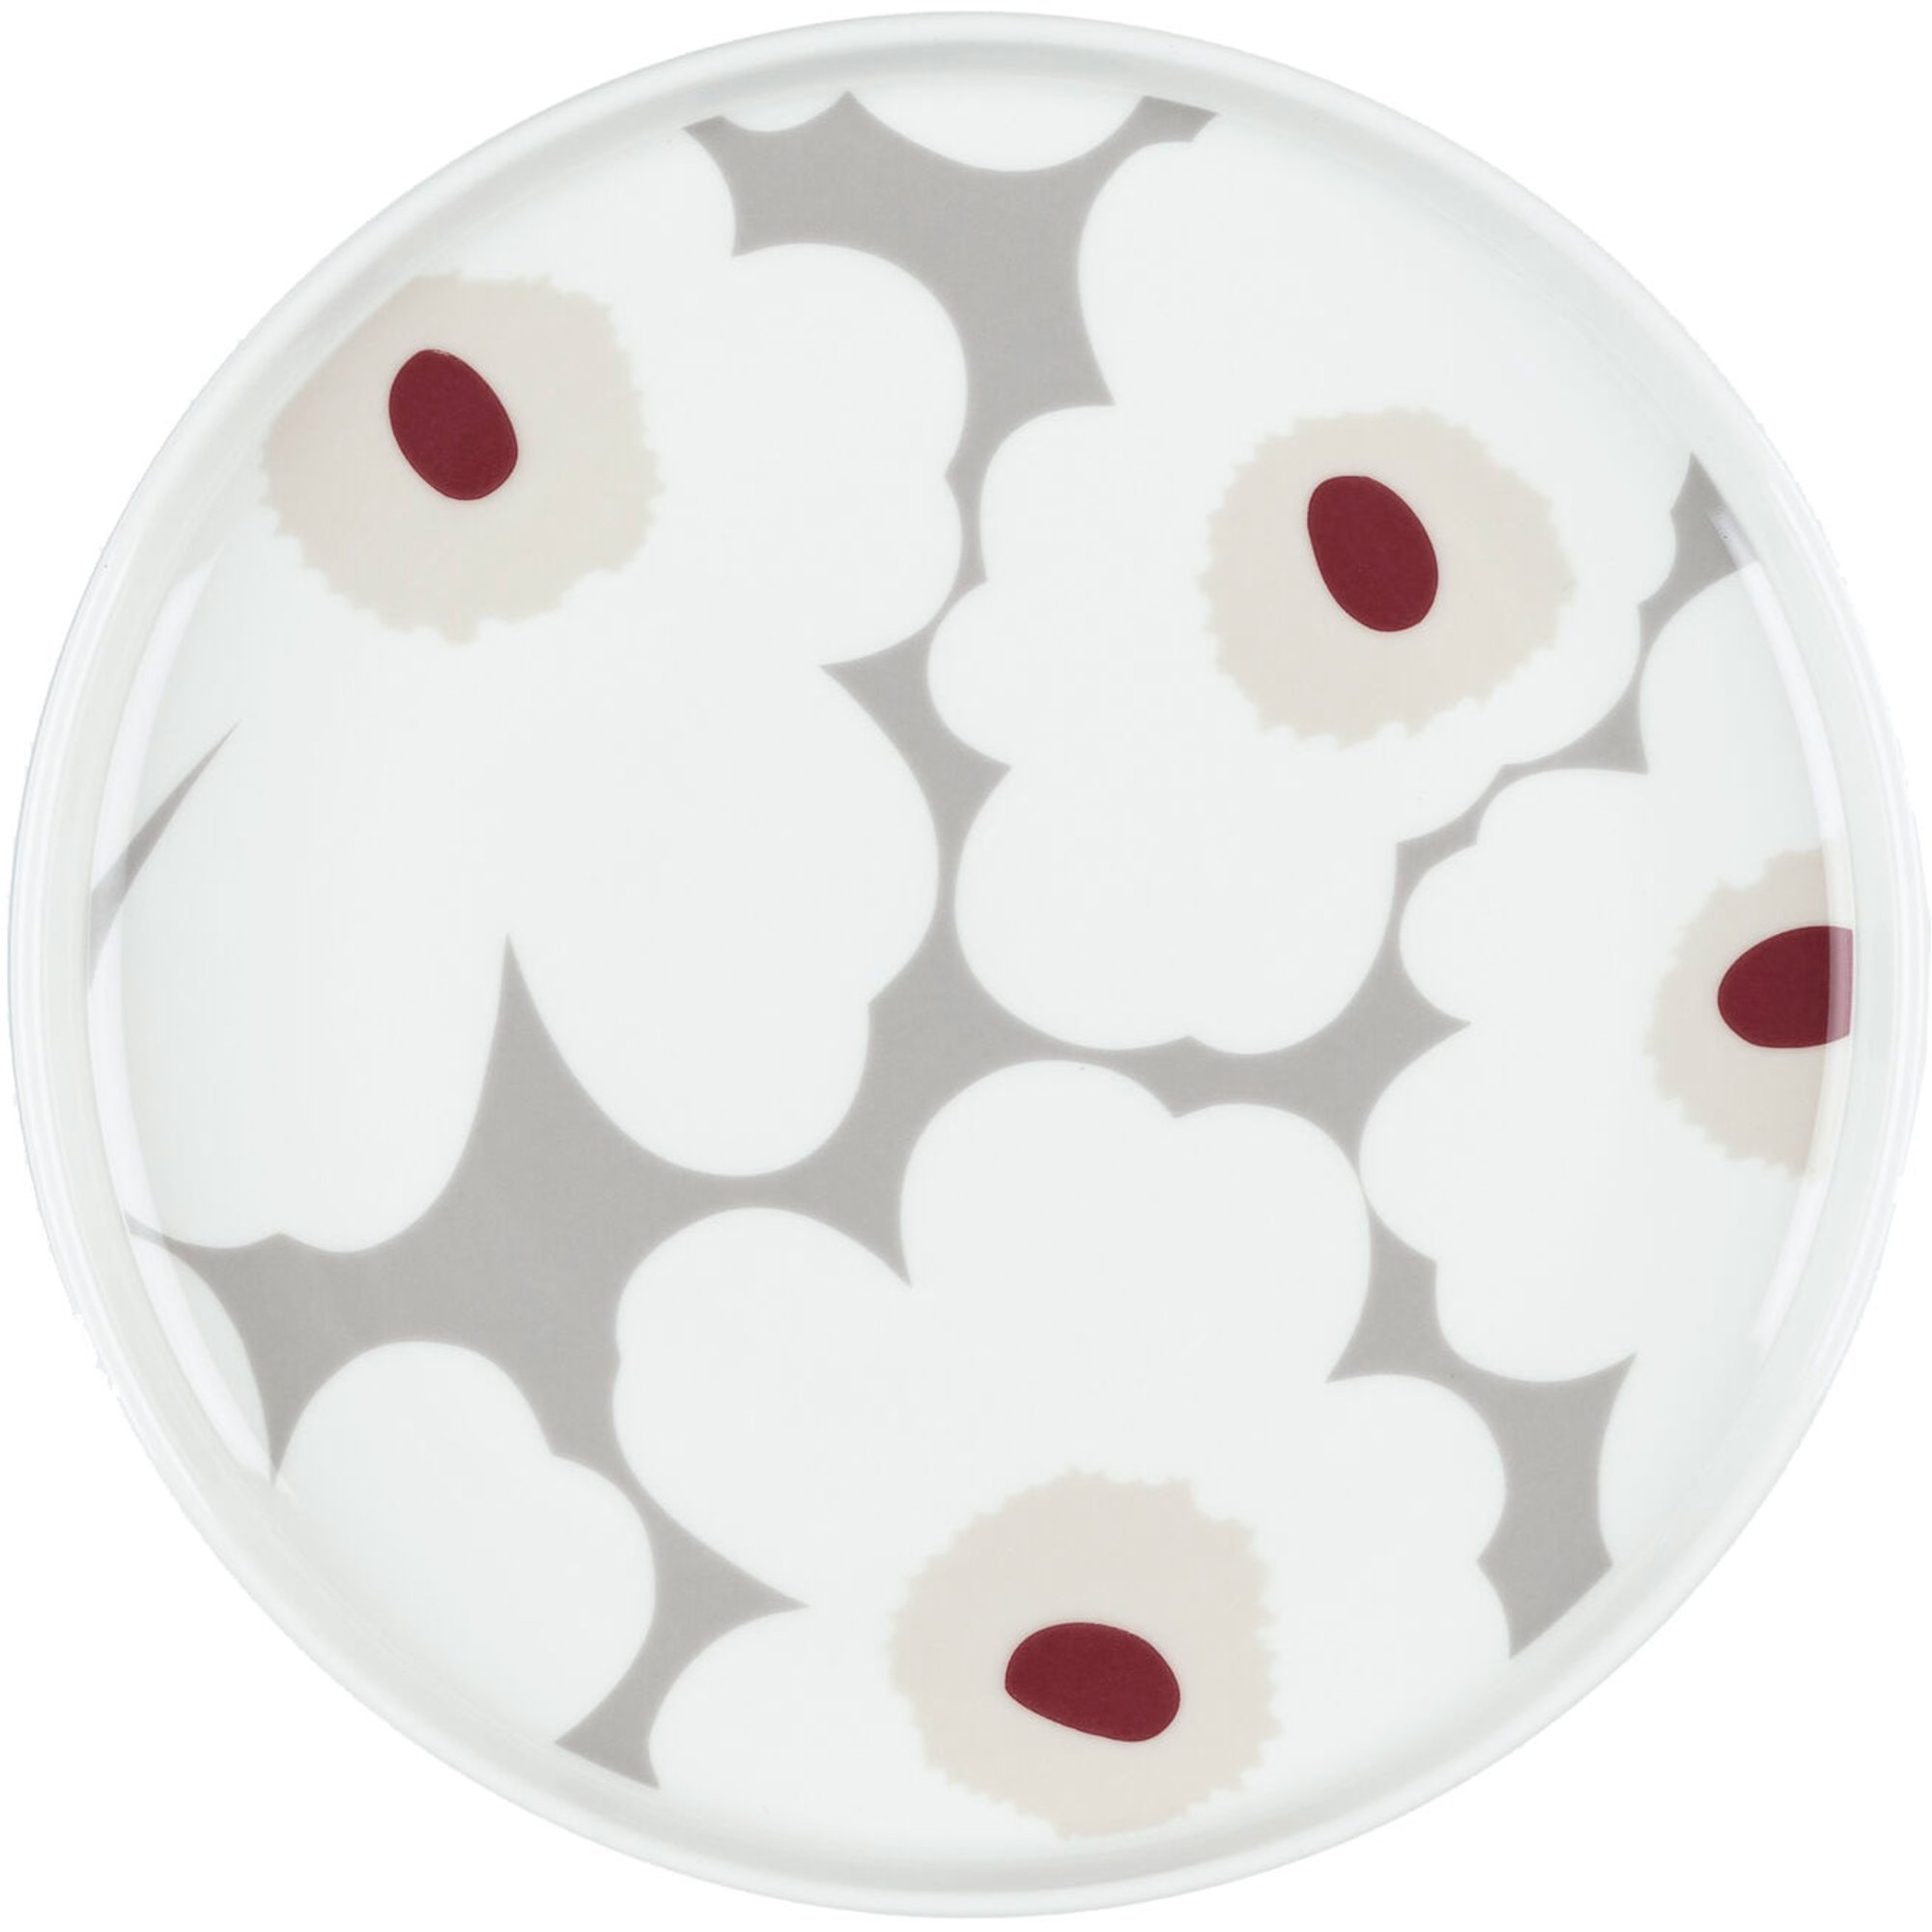 Marimekko Unikko tallerken 20 cm grå/rød/gul